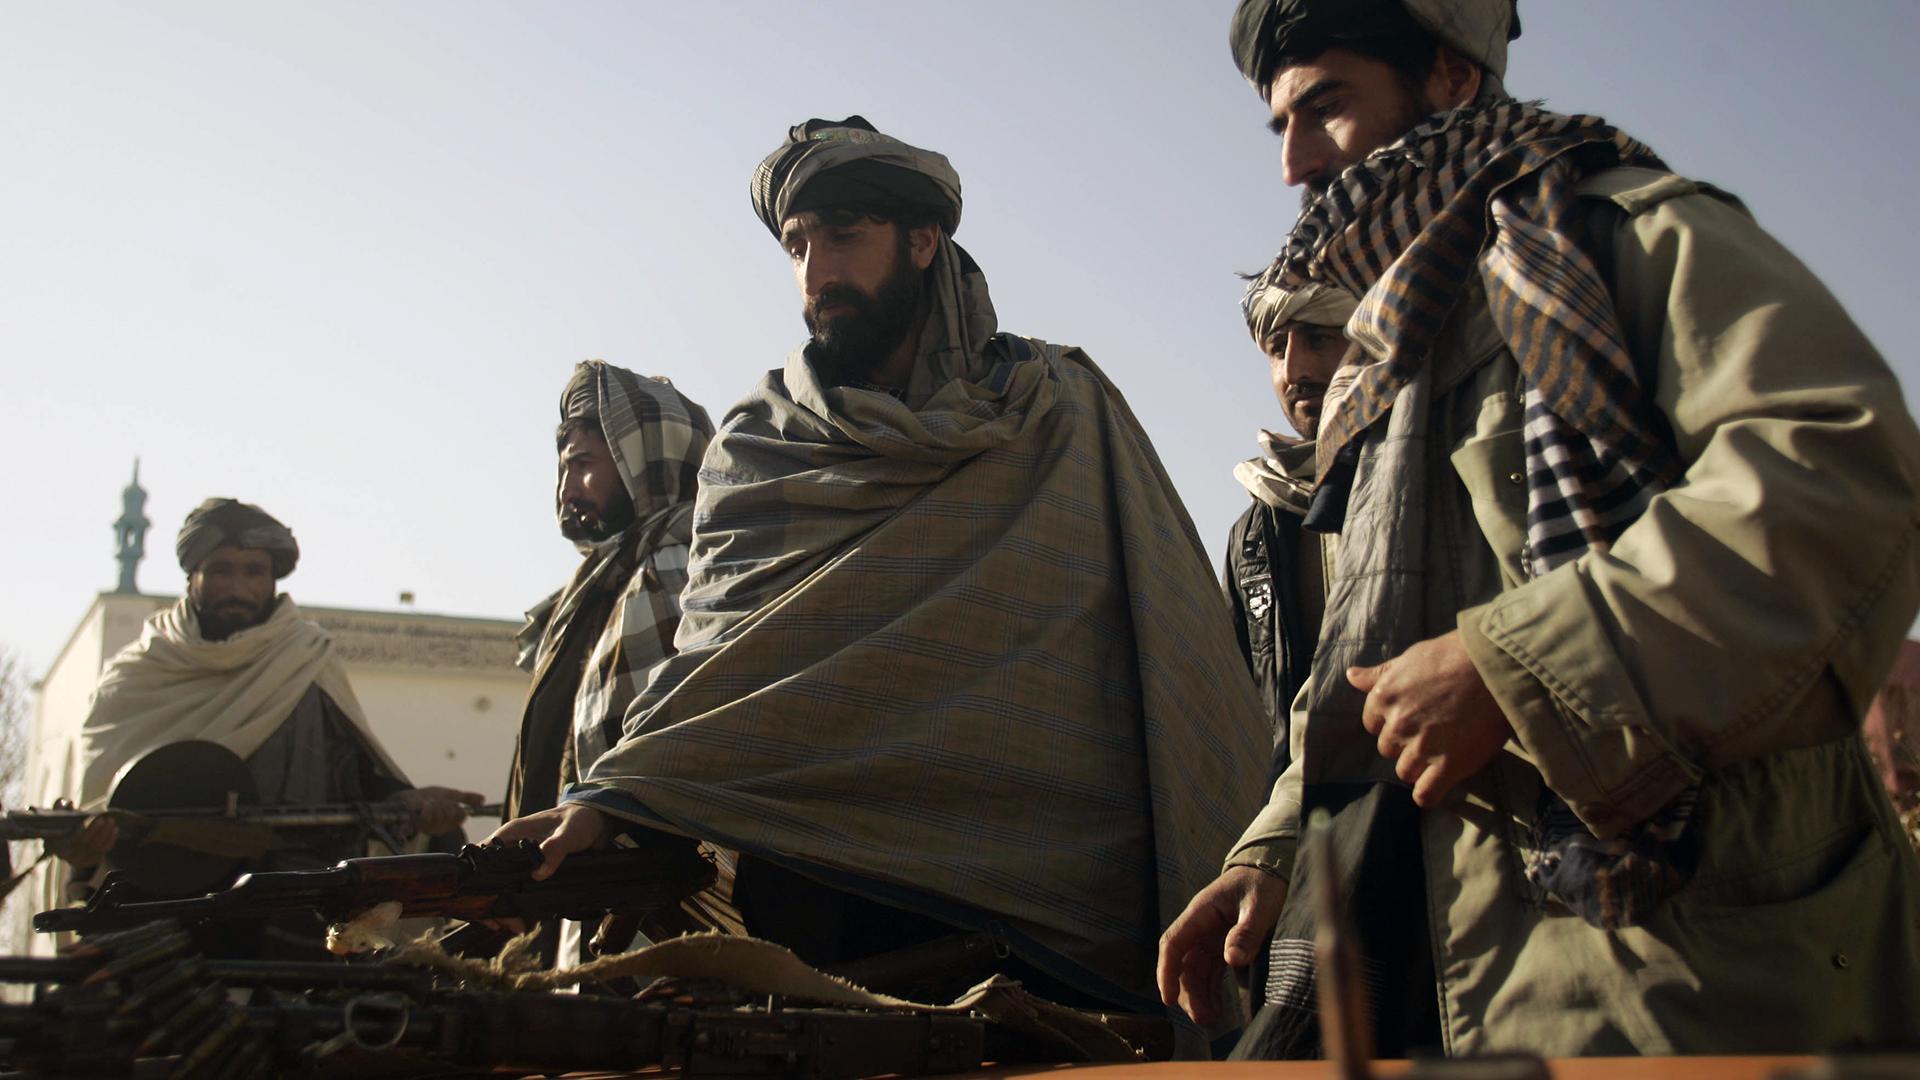 Талибы просят предоставить им место в ООН